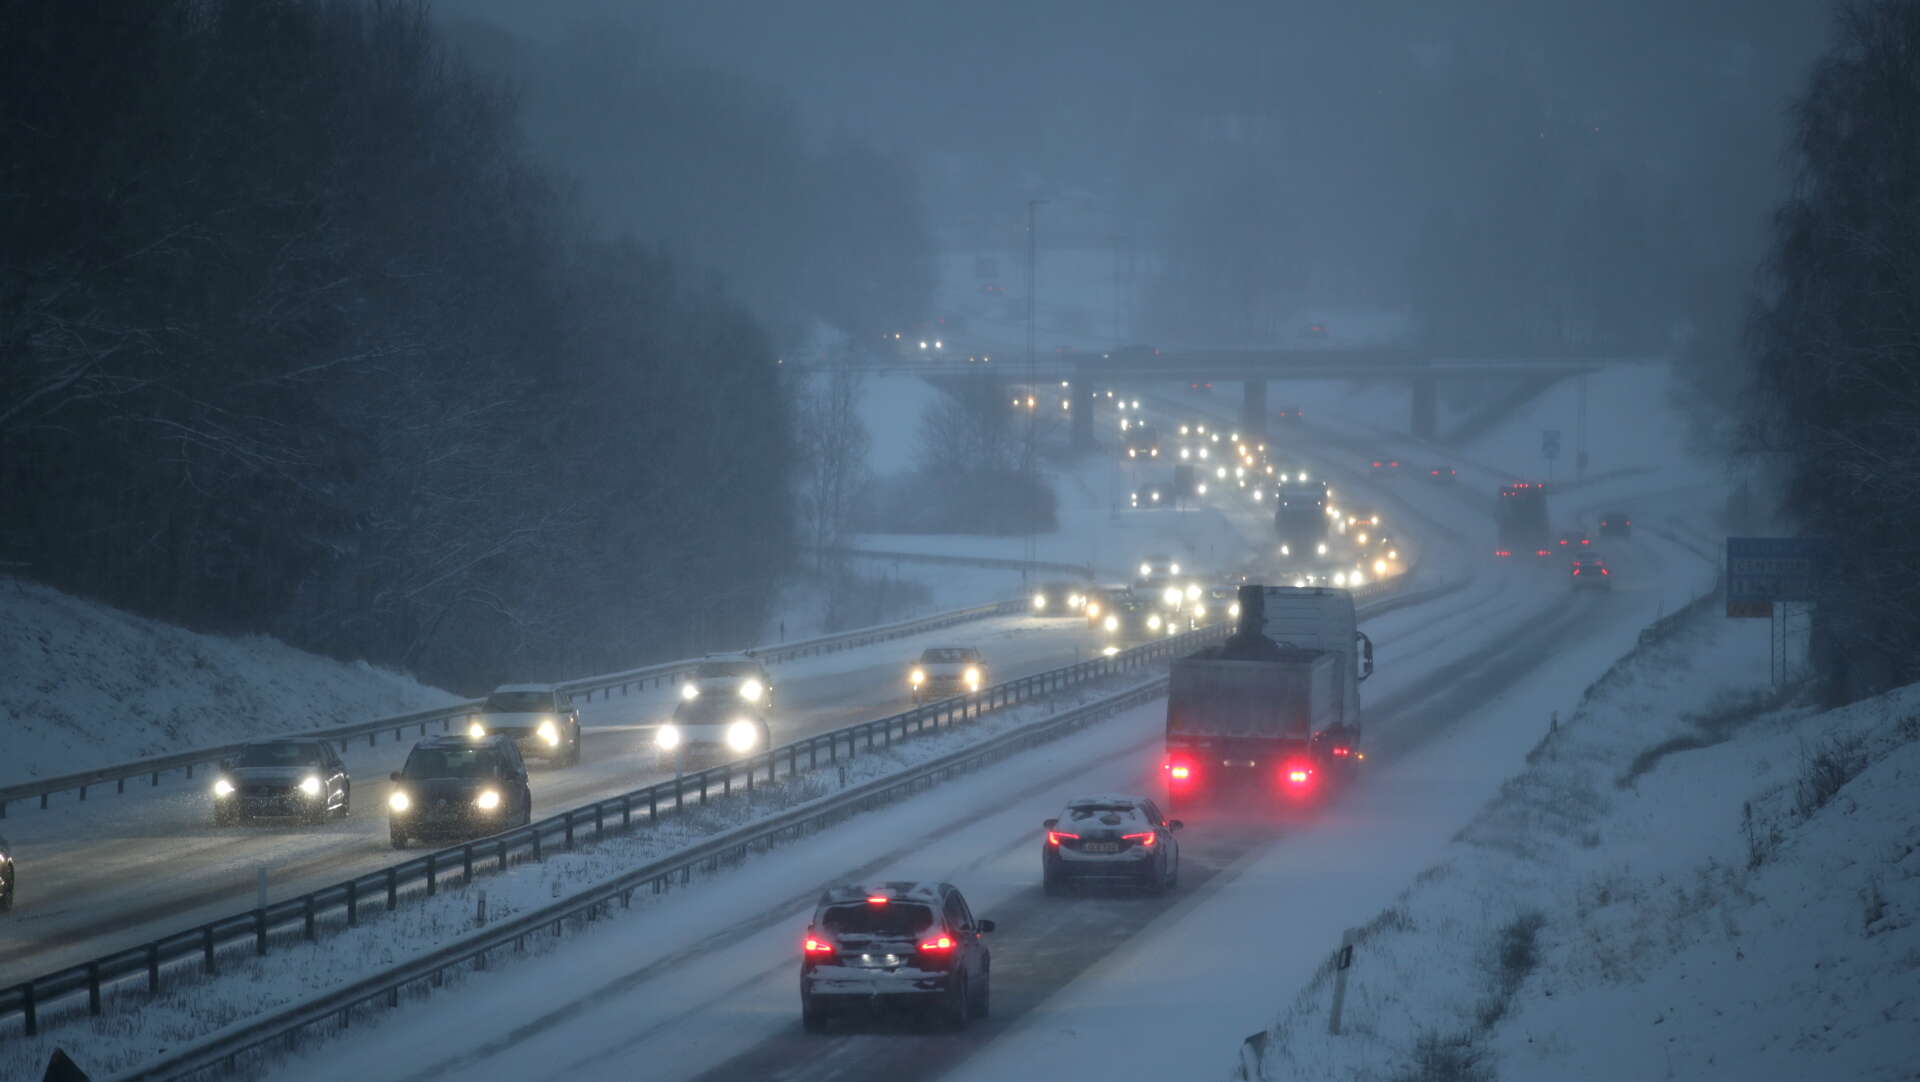 Det var segt i trafiken på grund av halka och snö under tisdagen, bland annat längs med E20 i höjd med Lerum.